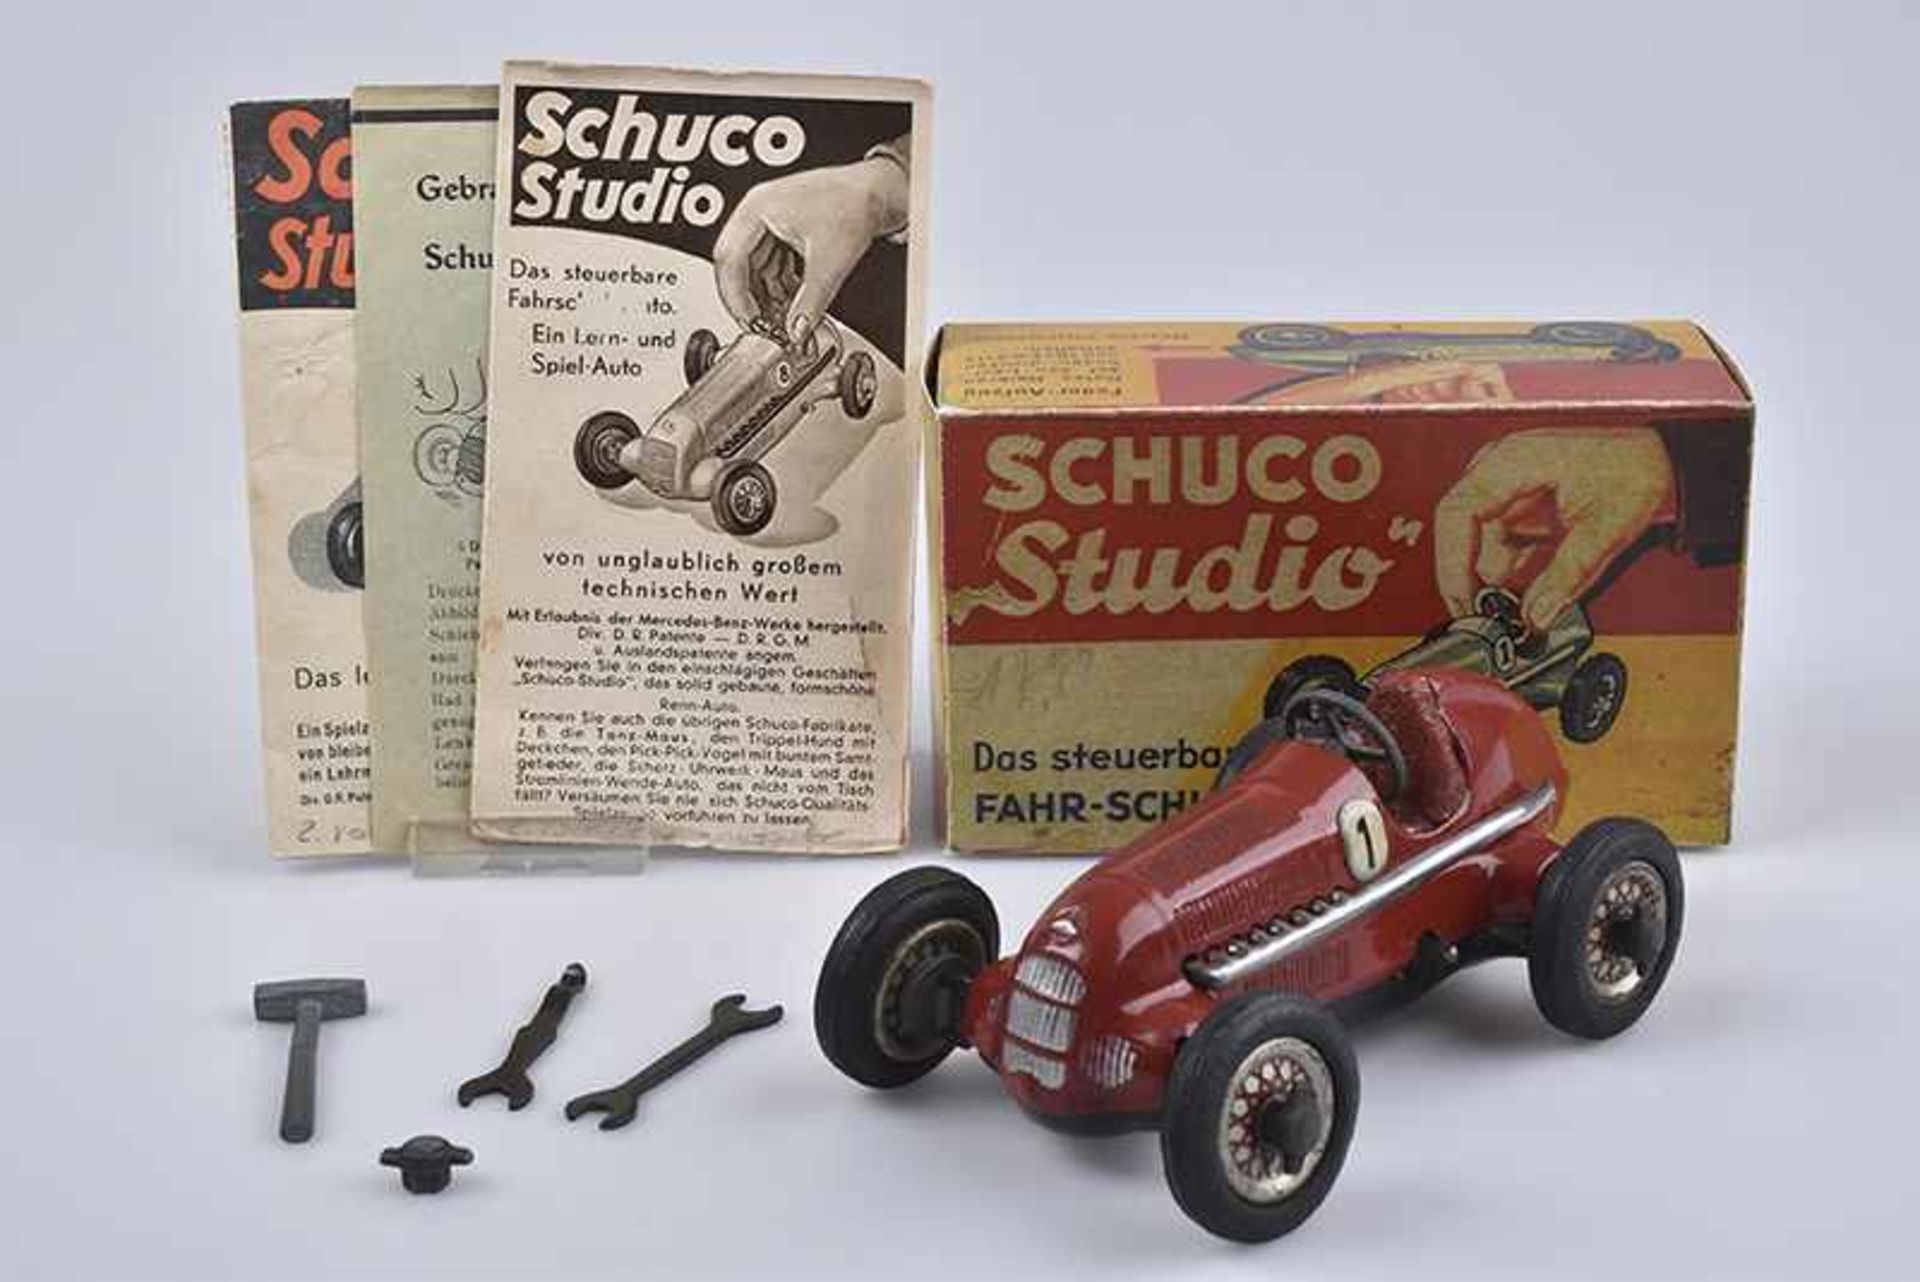 SCHUCO 1050 Studio, 1937/38, Vorkriegszeit, D.R Patente, rot, L 13 cm, Uhrwerk, Aufziehkurbel aus